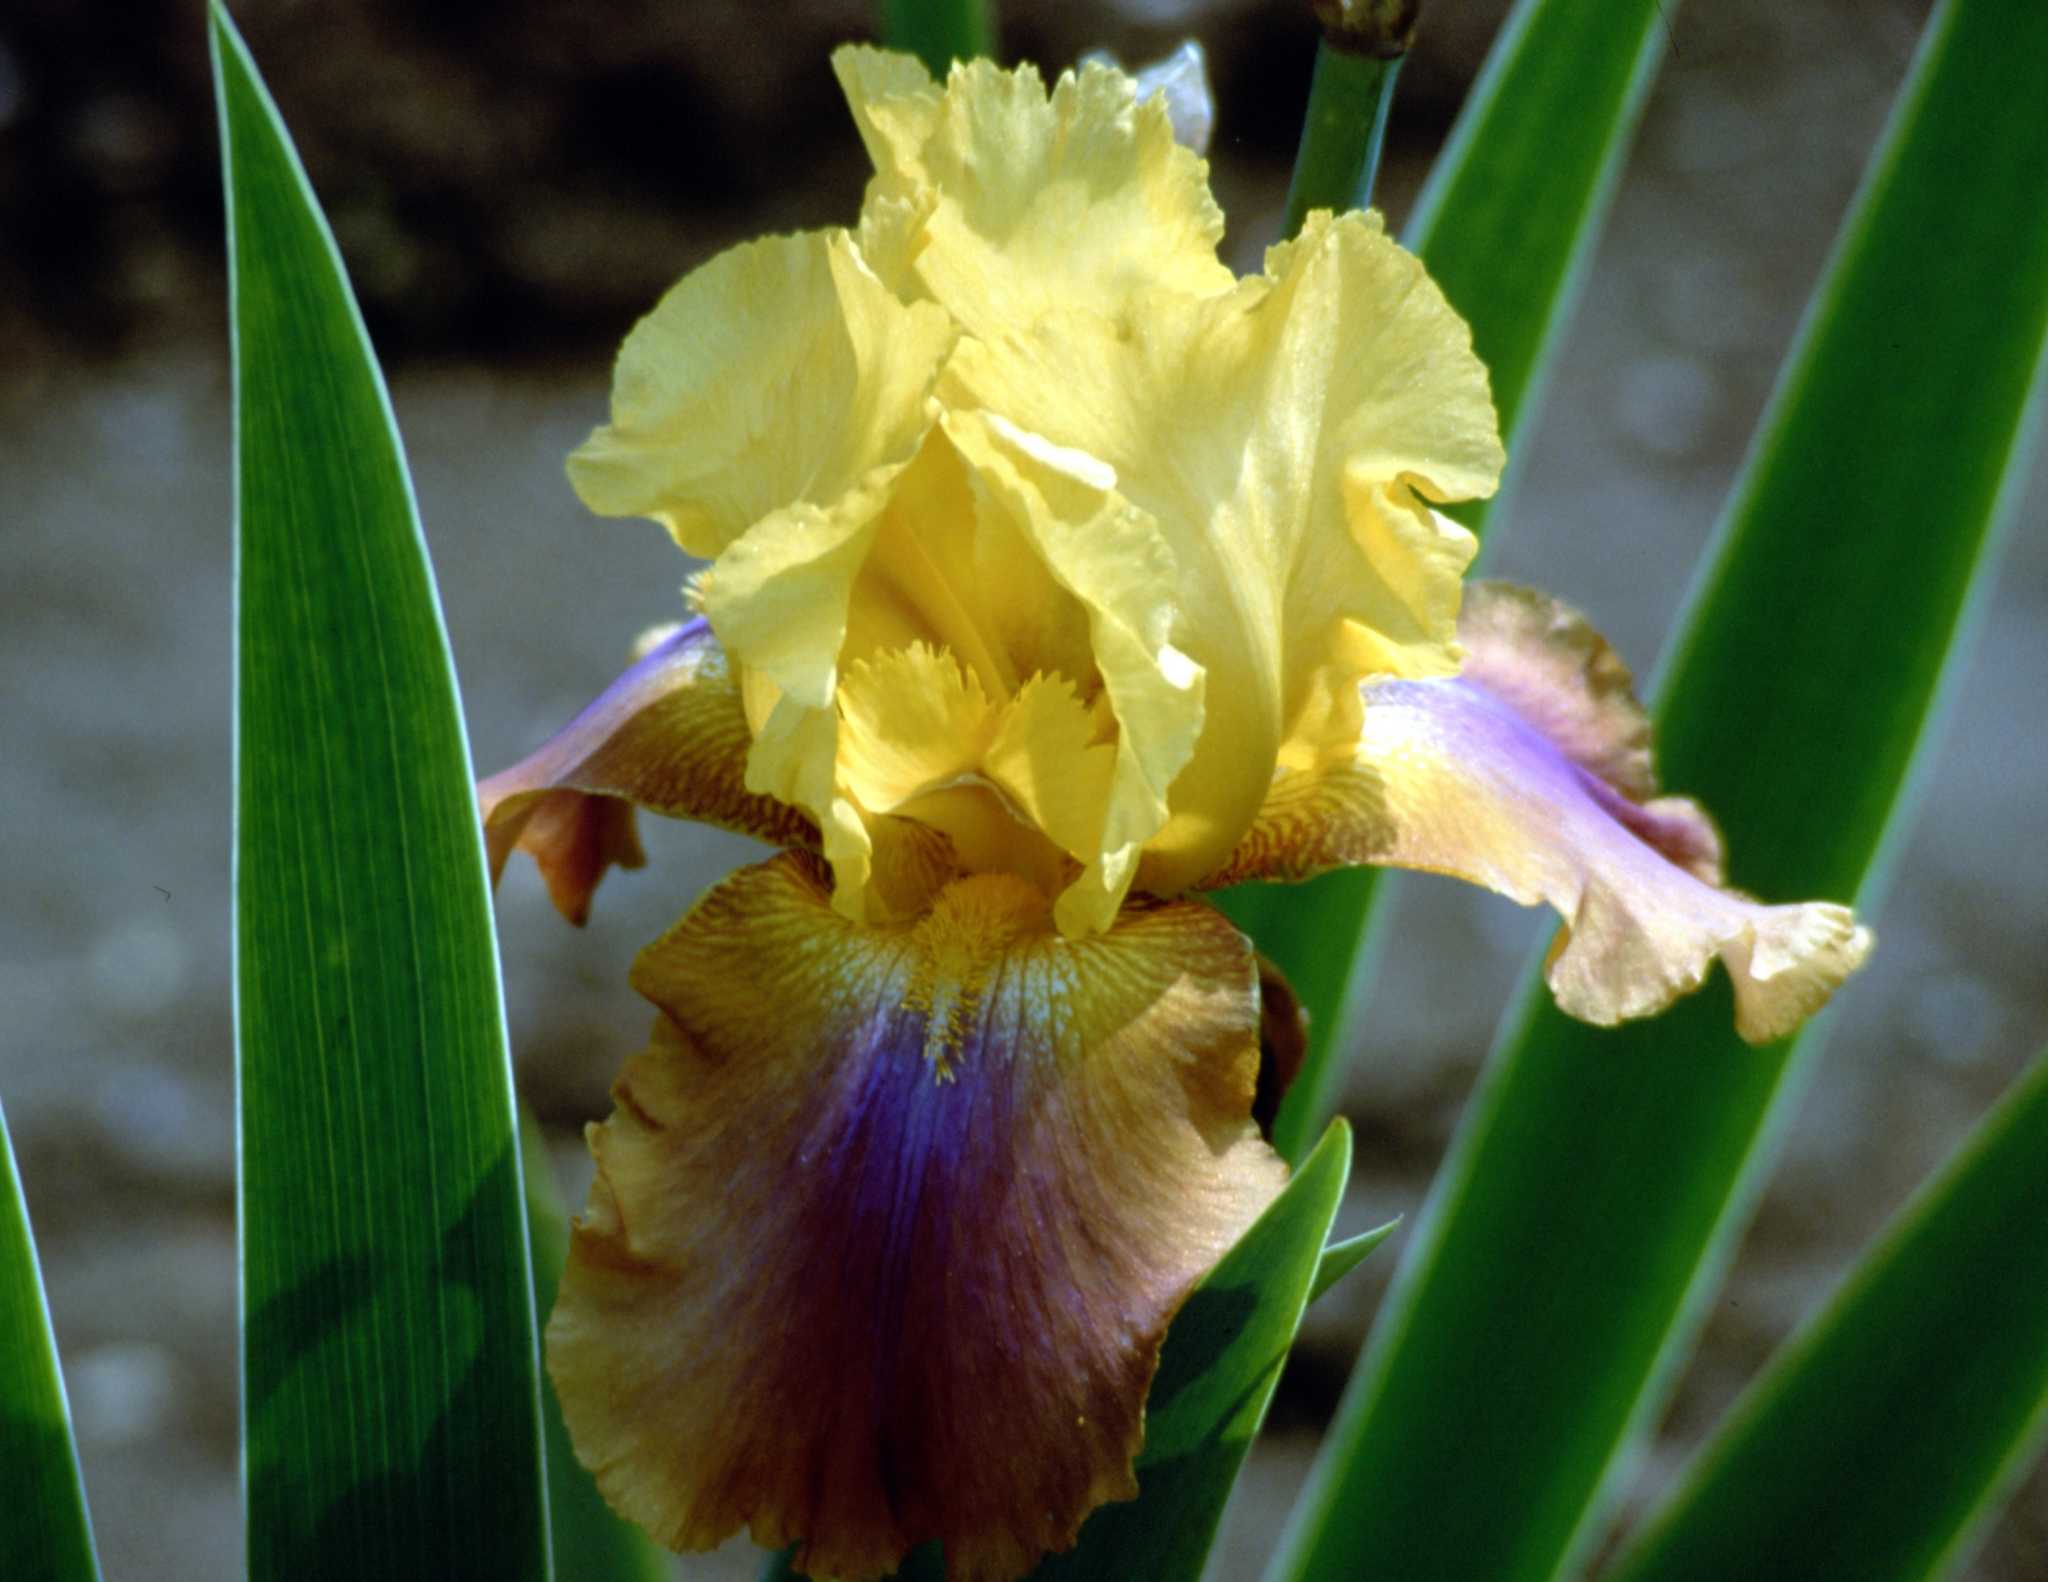 10 Factoids About Iris - White Flower Farm's blog